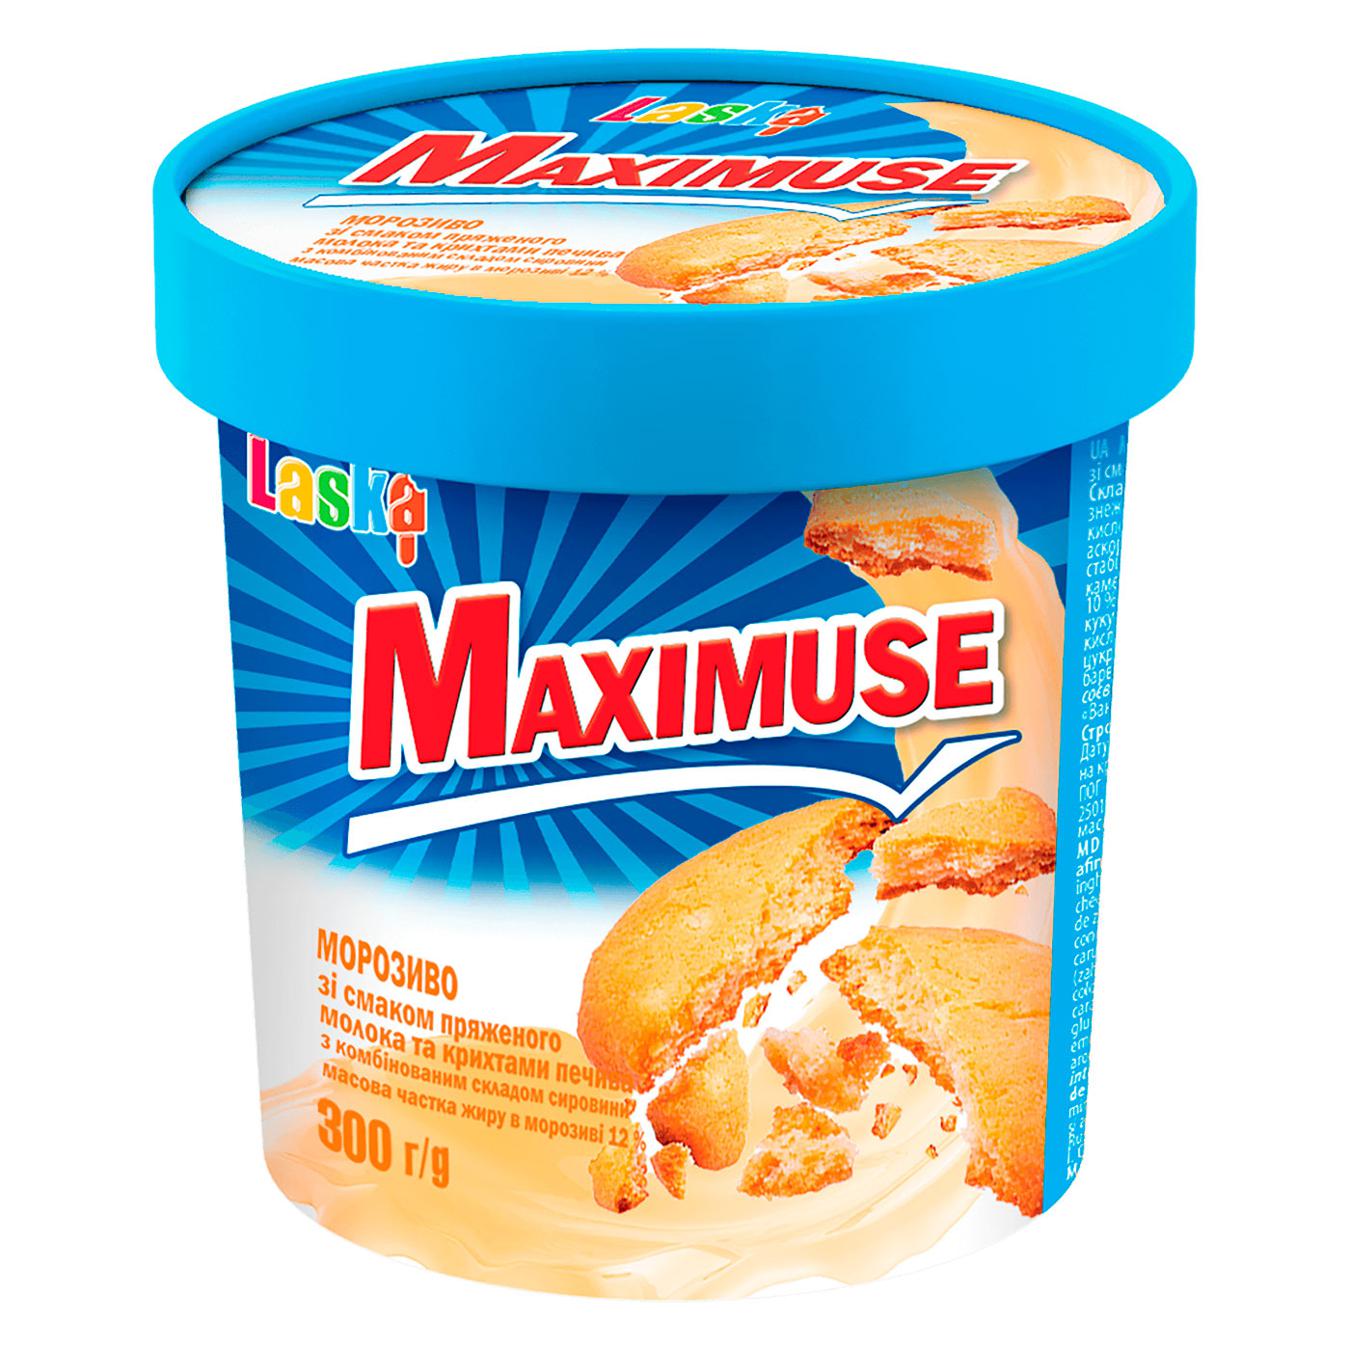 Морозиво Maximuse зі смаком пряженого молока та крихтами печива 300г